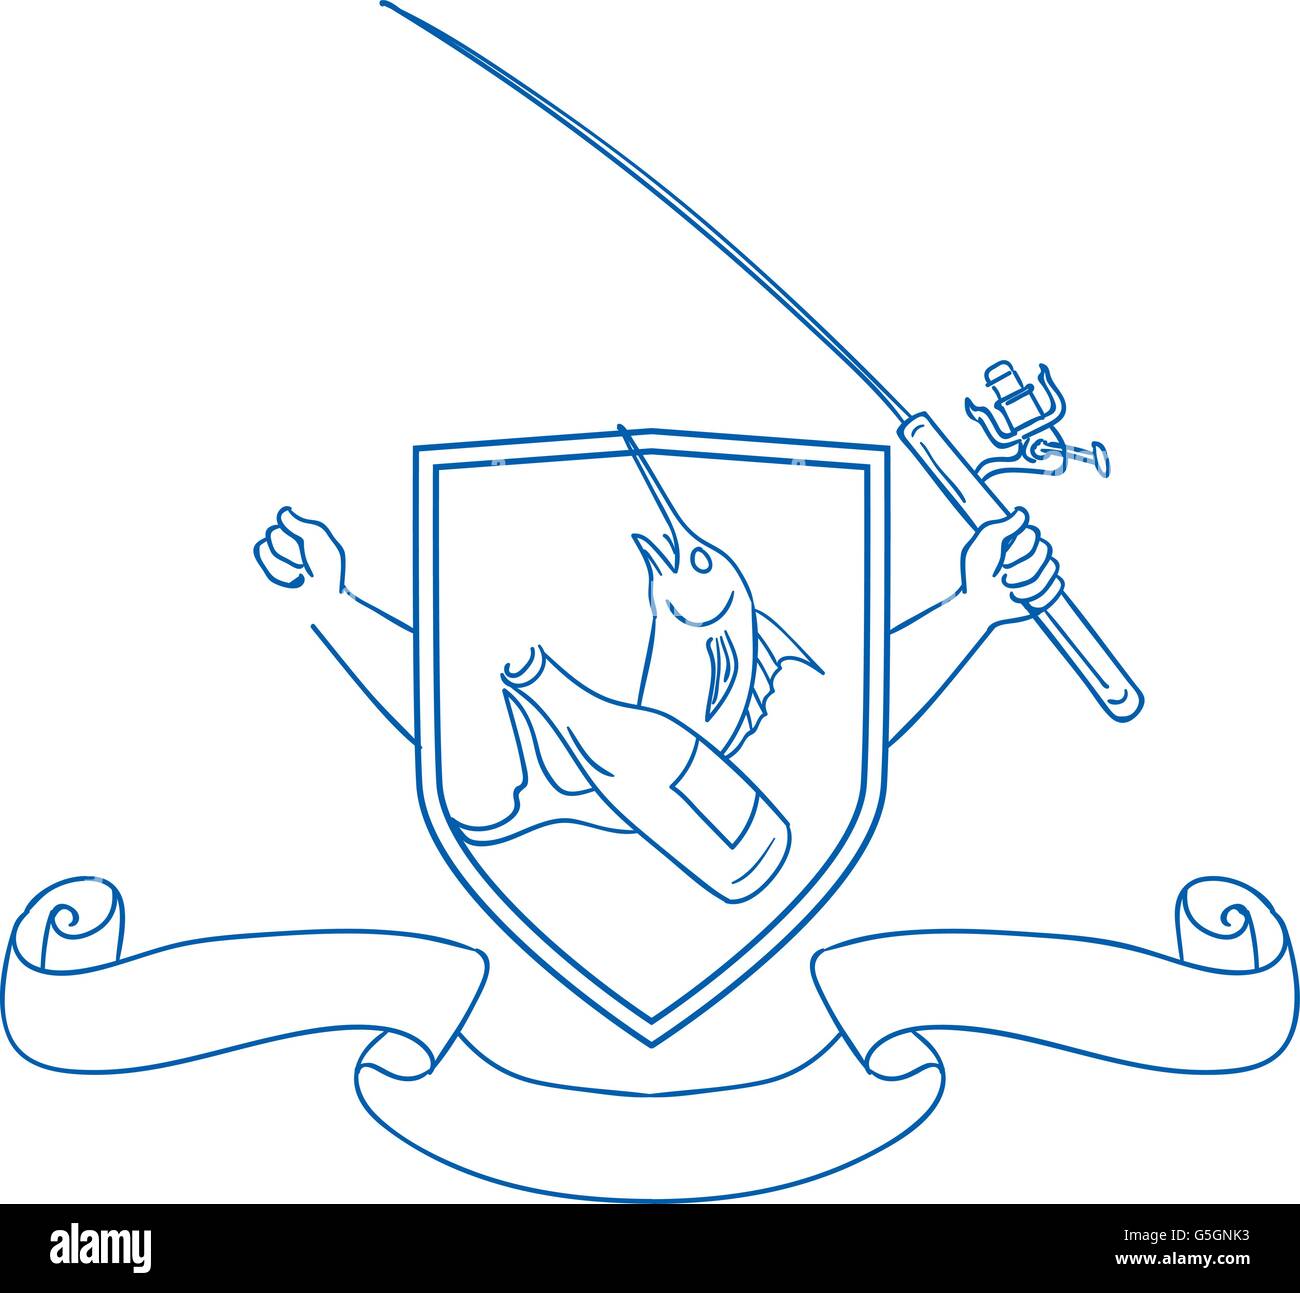 Croquis dessin illustration style de main tenant la canne à pêche et le moulinet de brancher une bouteille de bière et le makaire bleu avec du poisson de mer profonde Illustration de Vecteur